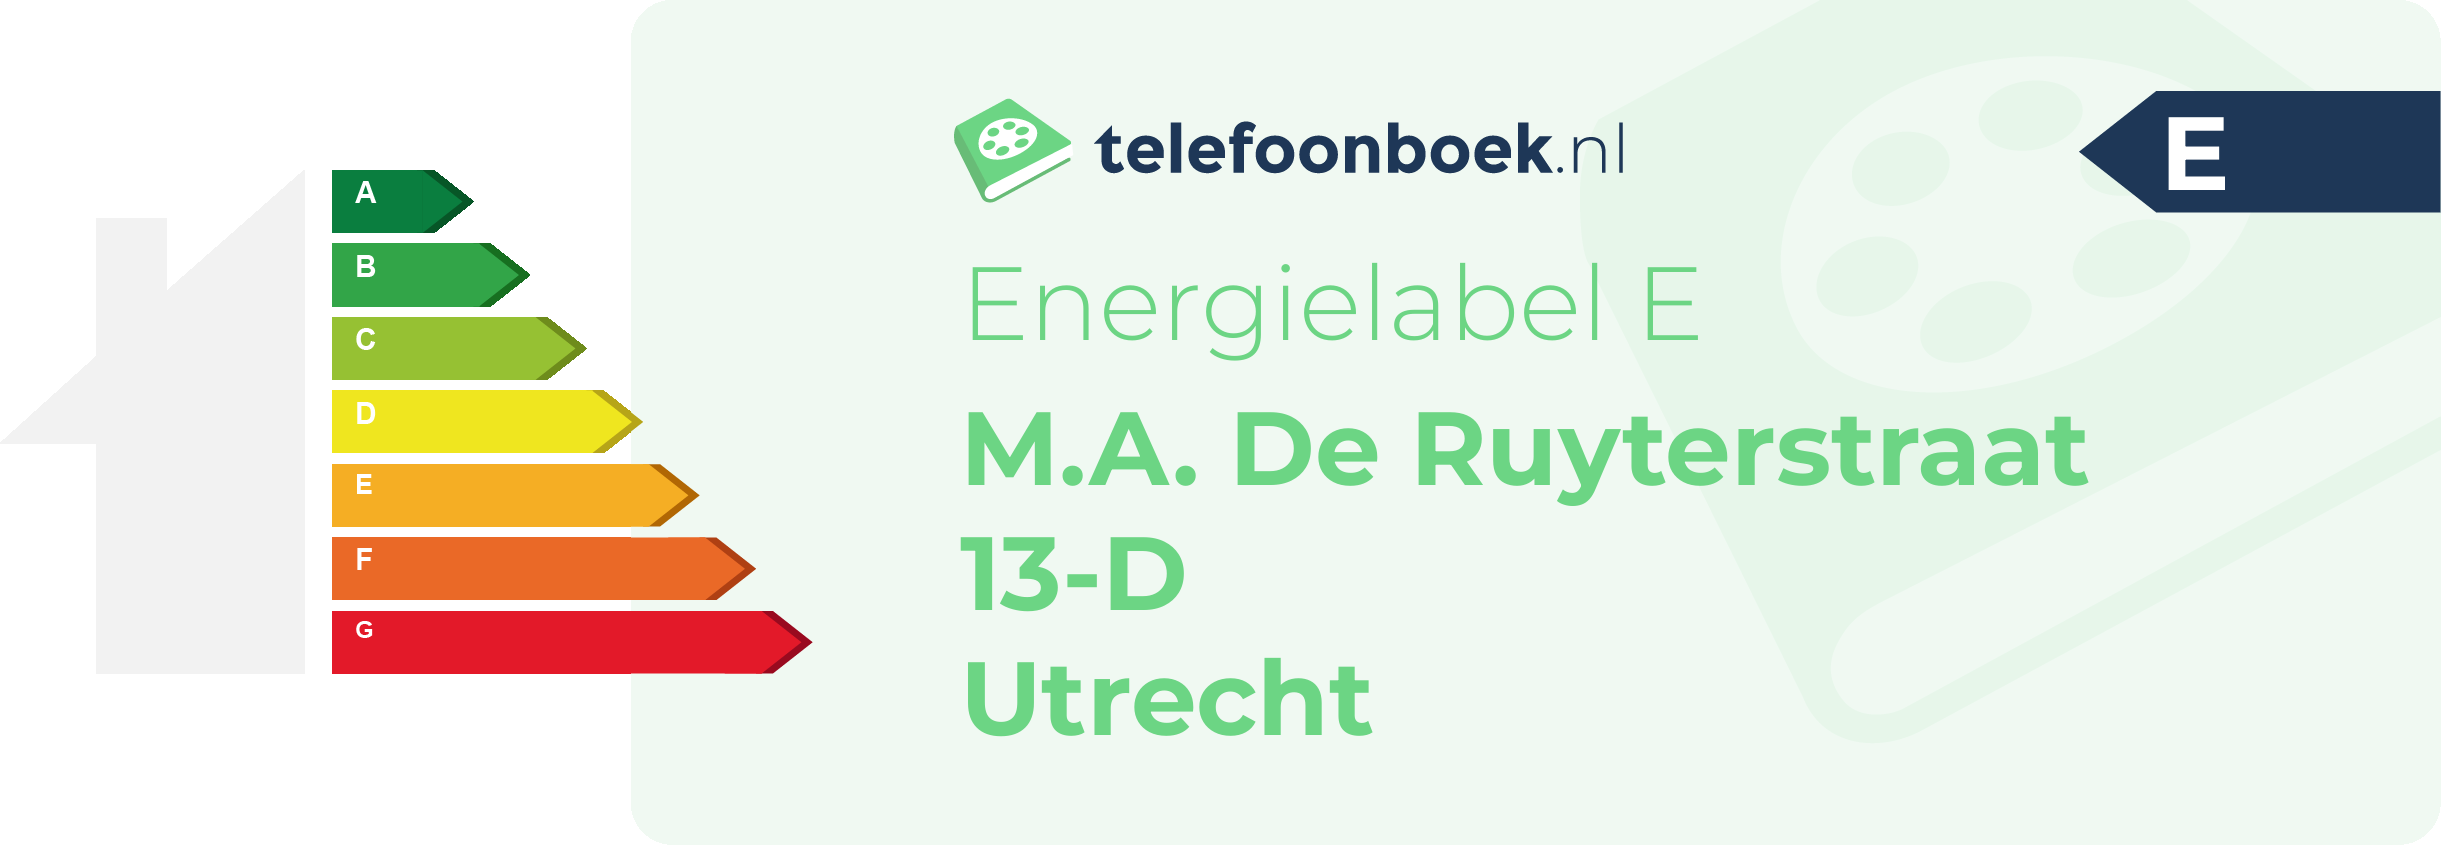 Energielabel M.A. De Ruyterstraat 13-D Utrecht